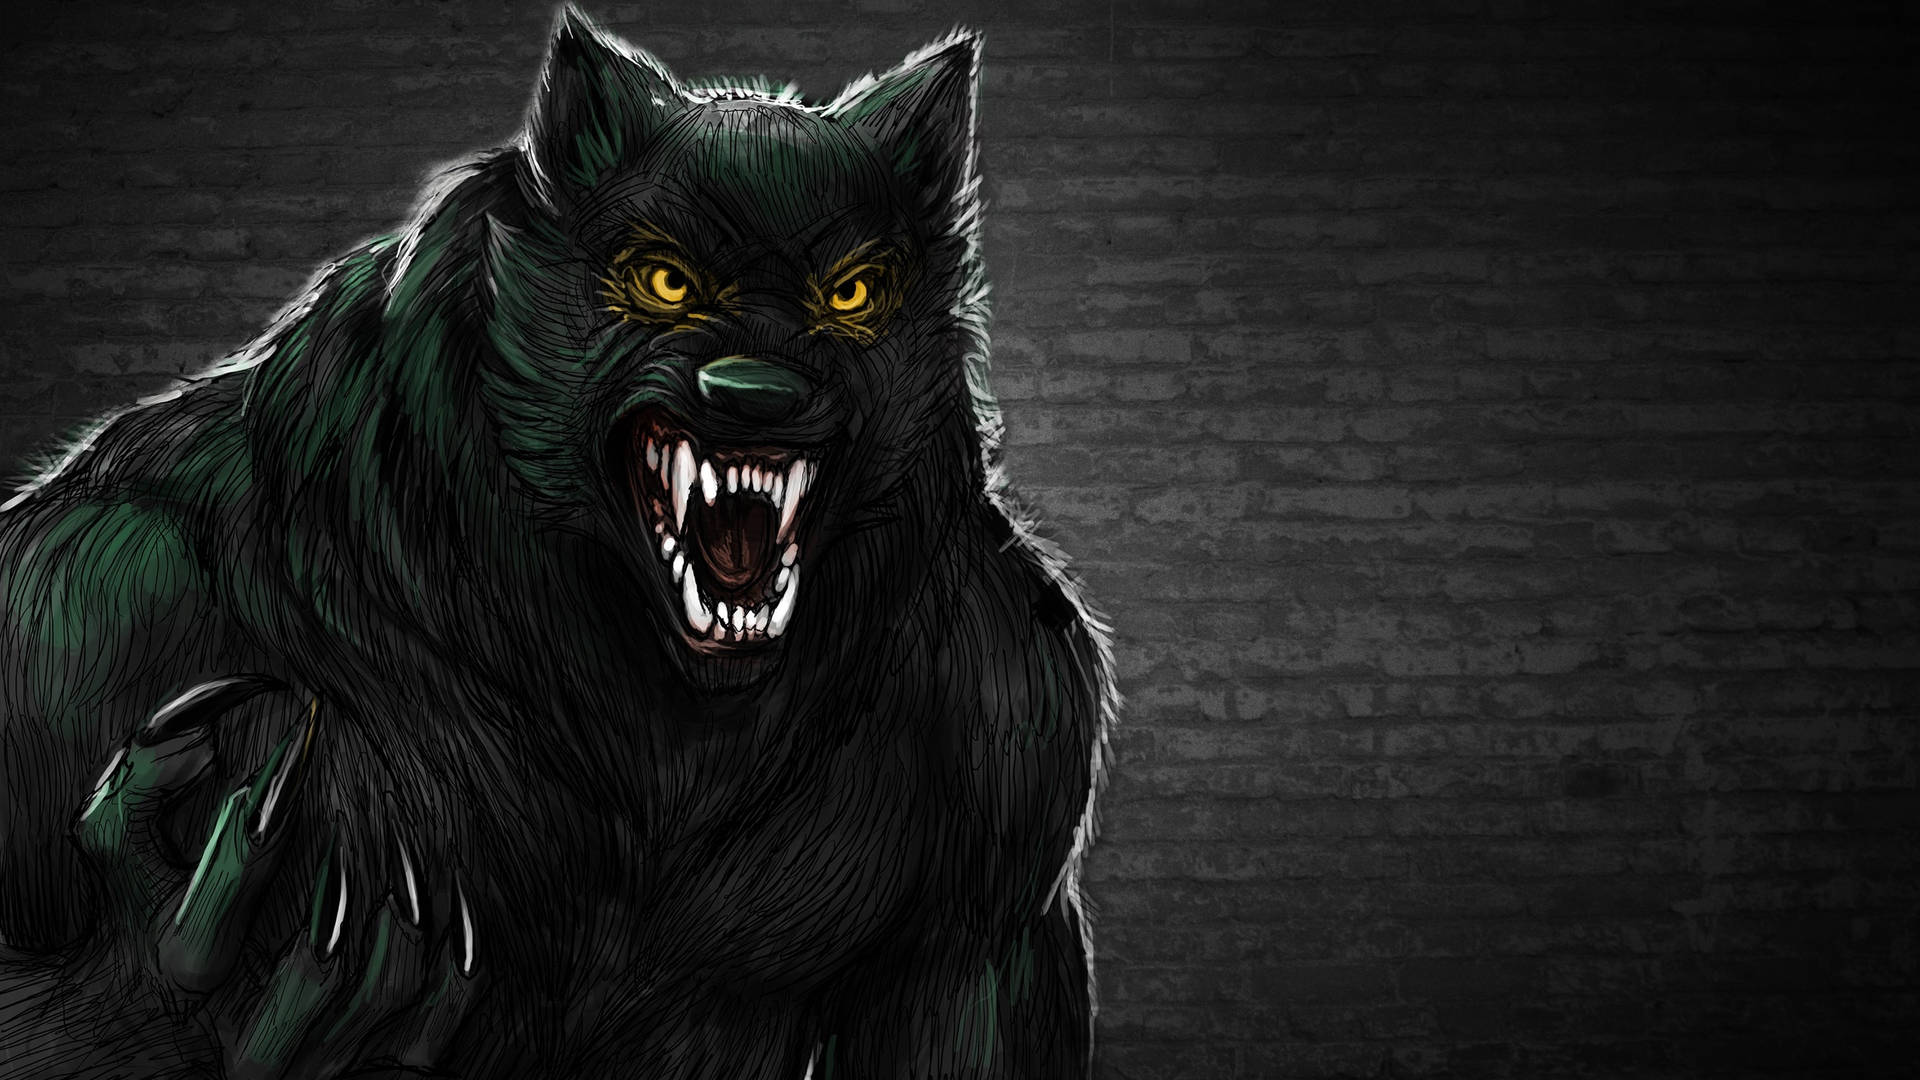 Dark Urban Werewolf Art Wallpaper